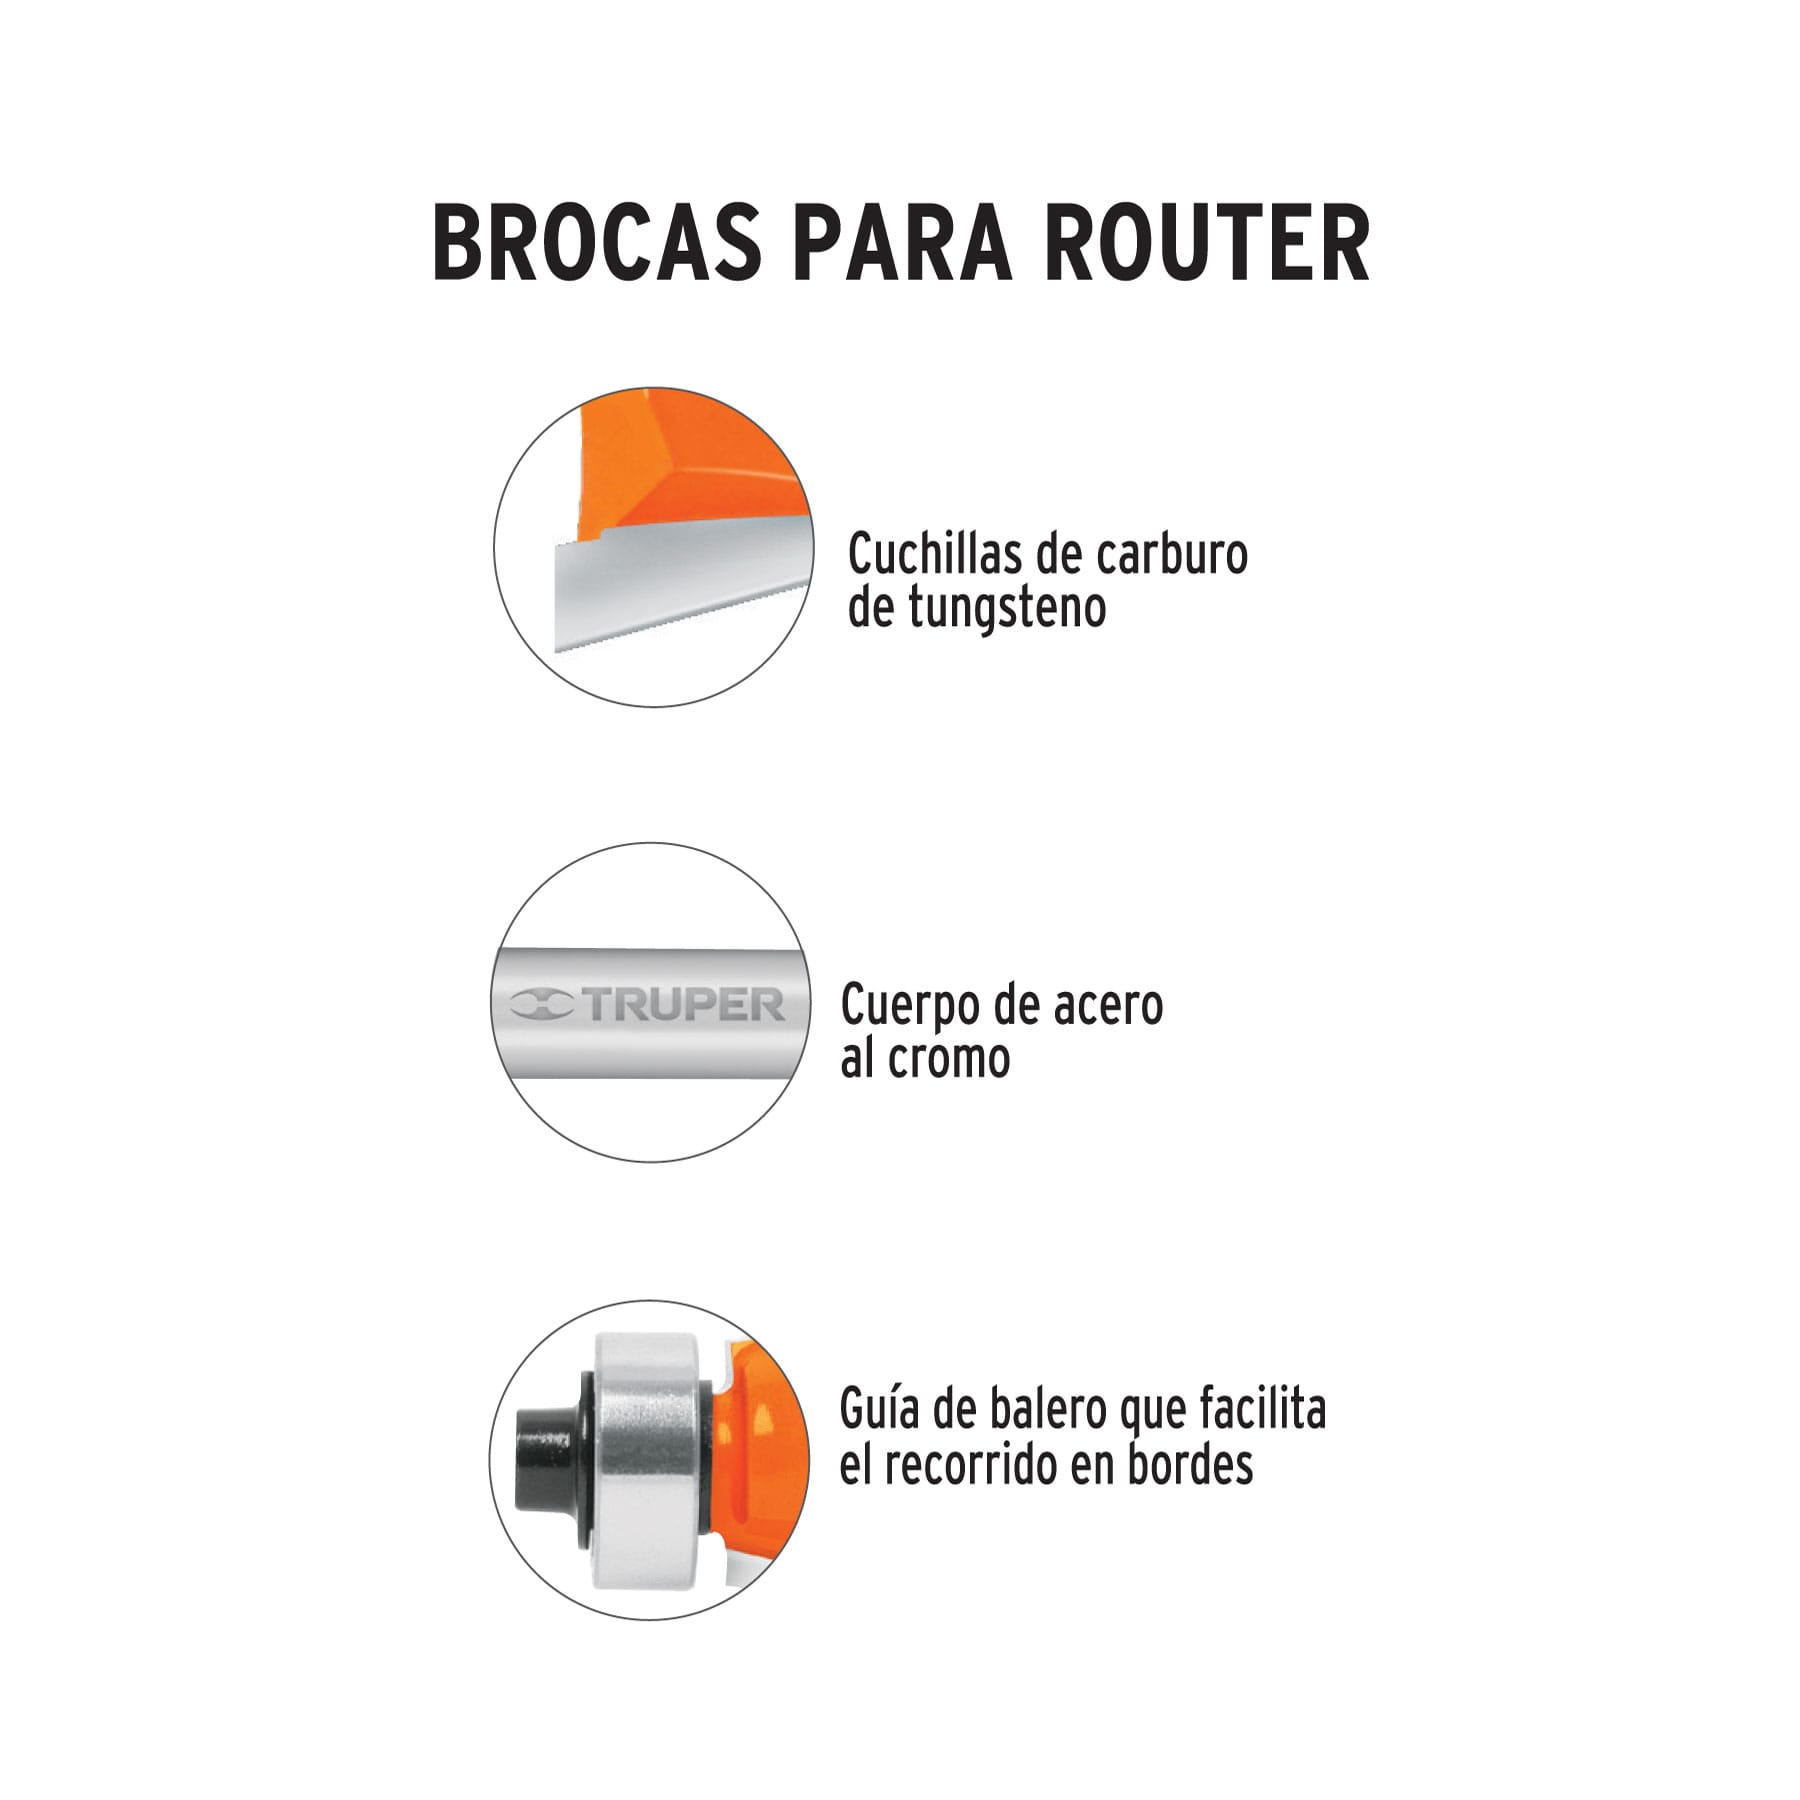 Broca Para Router, Chaflán, 1-1/4" Con Balero, Truper